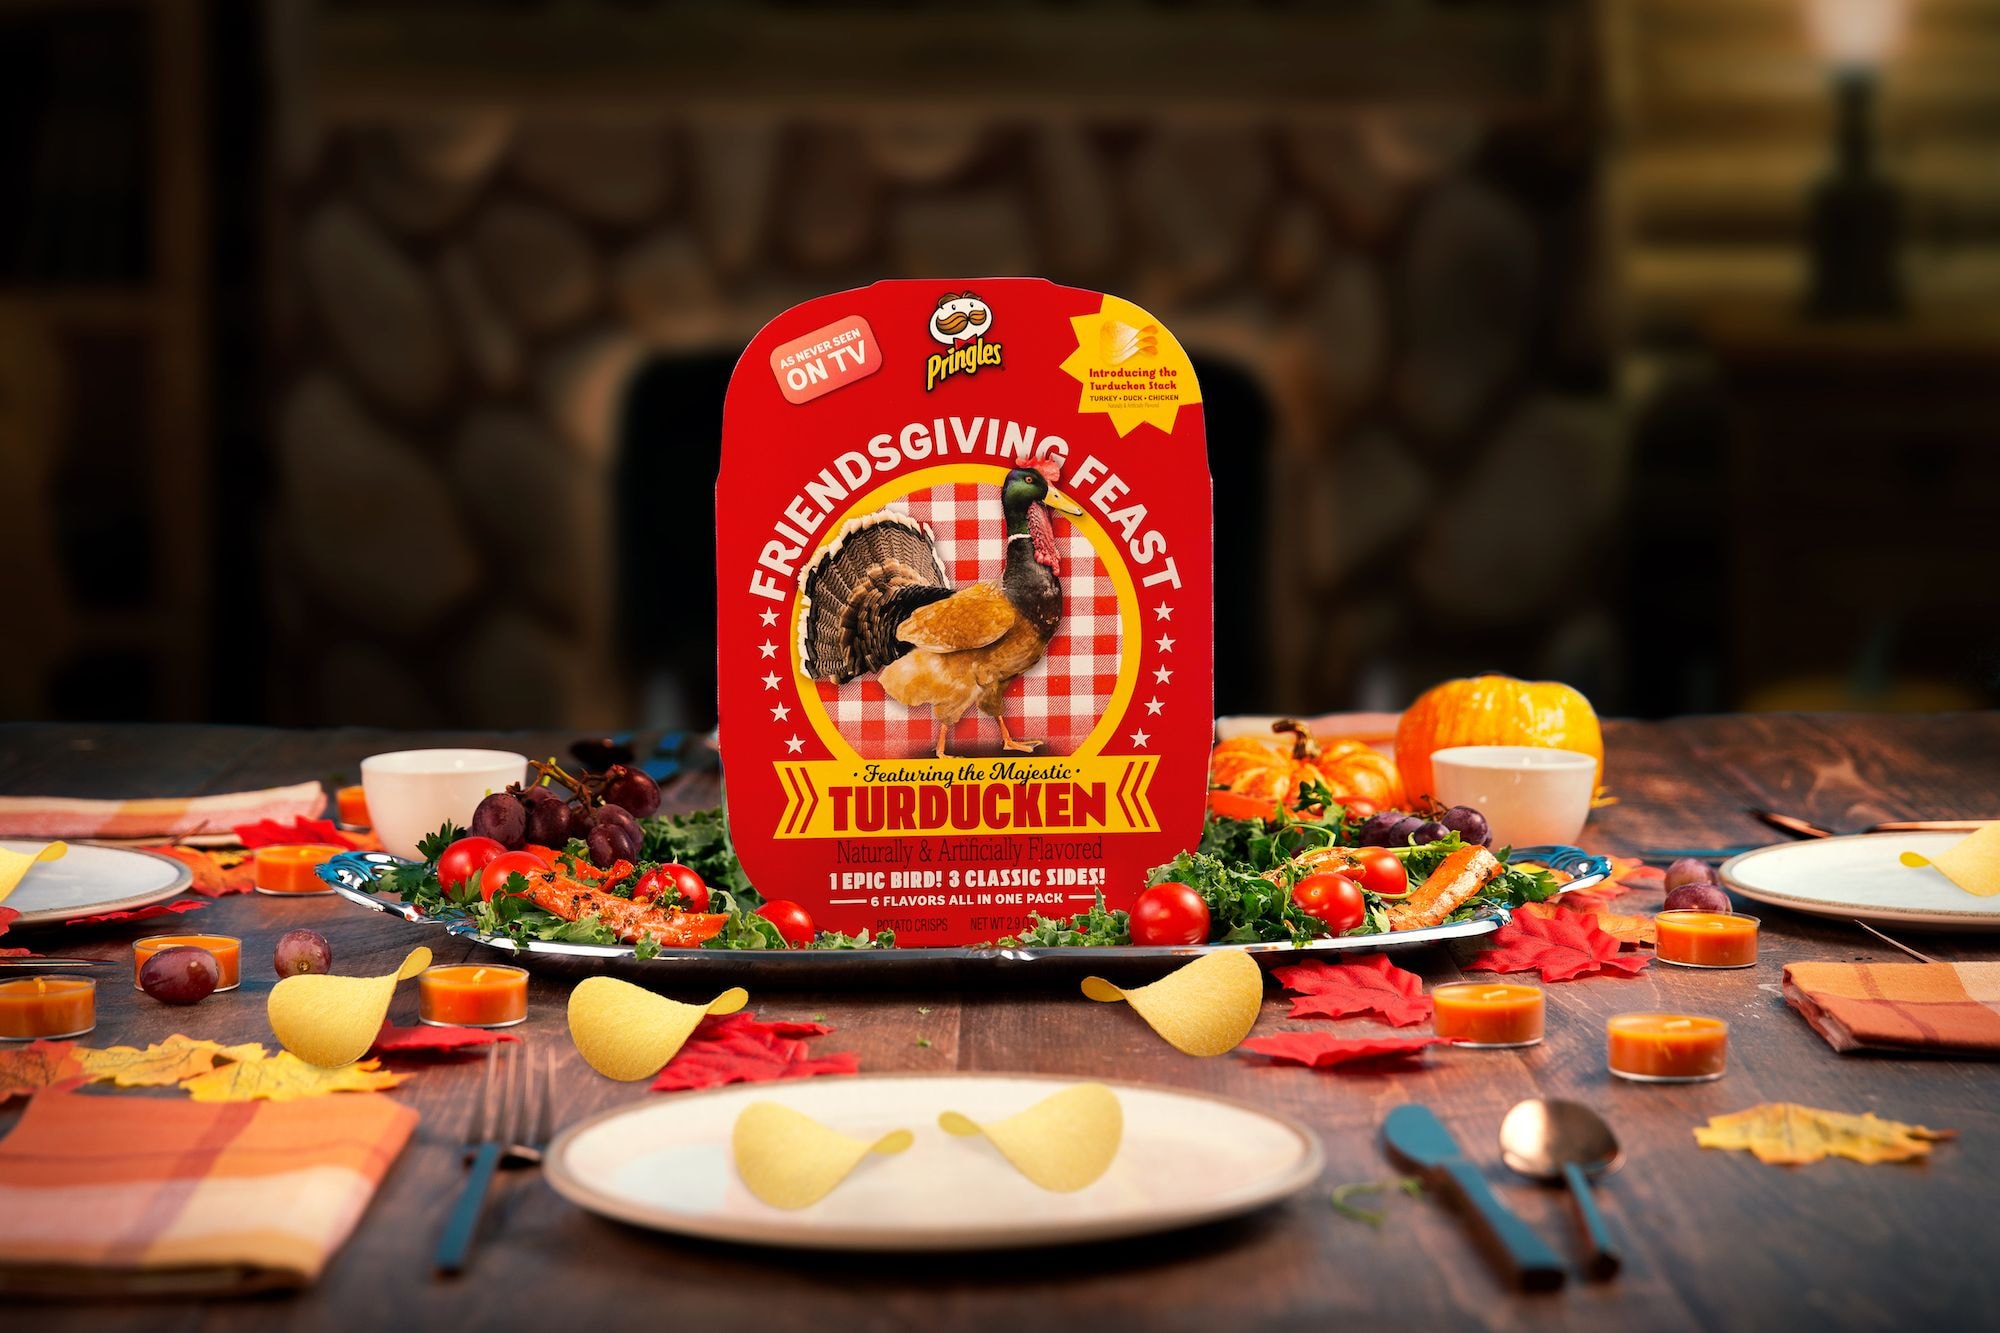 Pringles Turducken Friendsgiving Feast Kit Release Info Date Buy Chicken Turkey Duck Flavored Chips